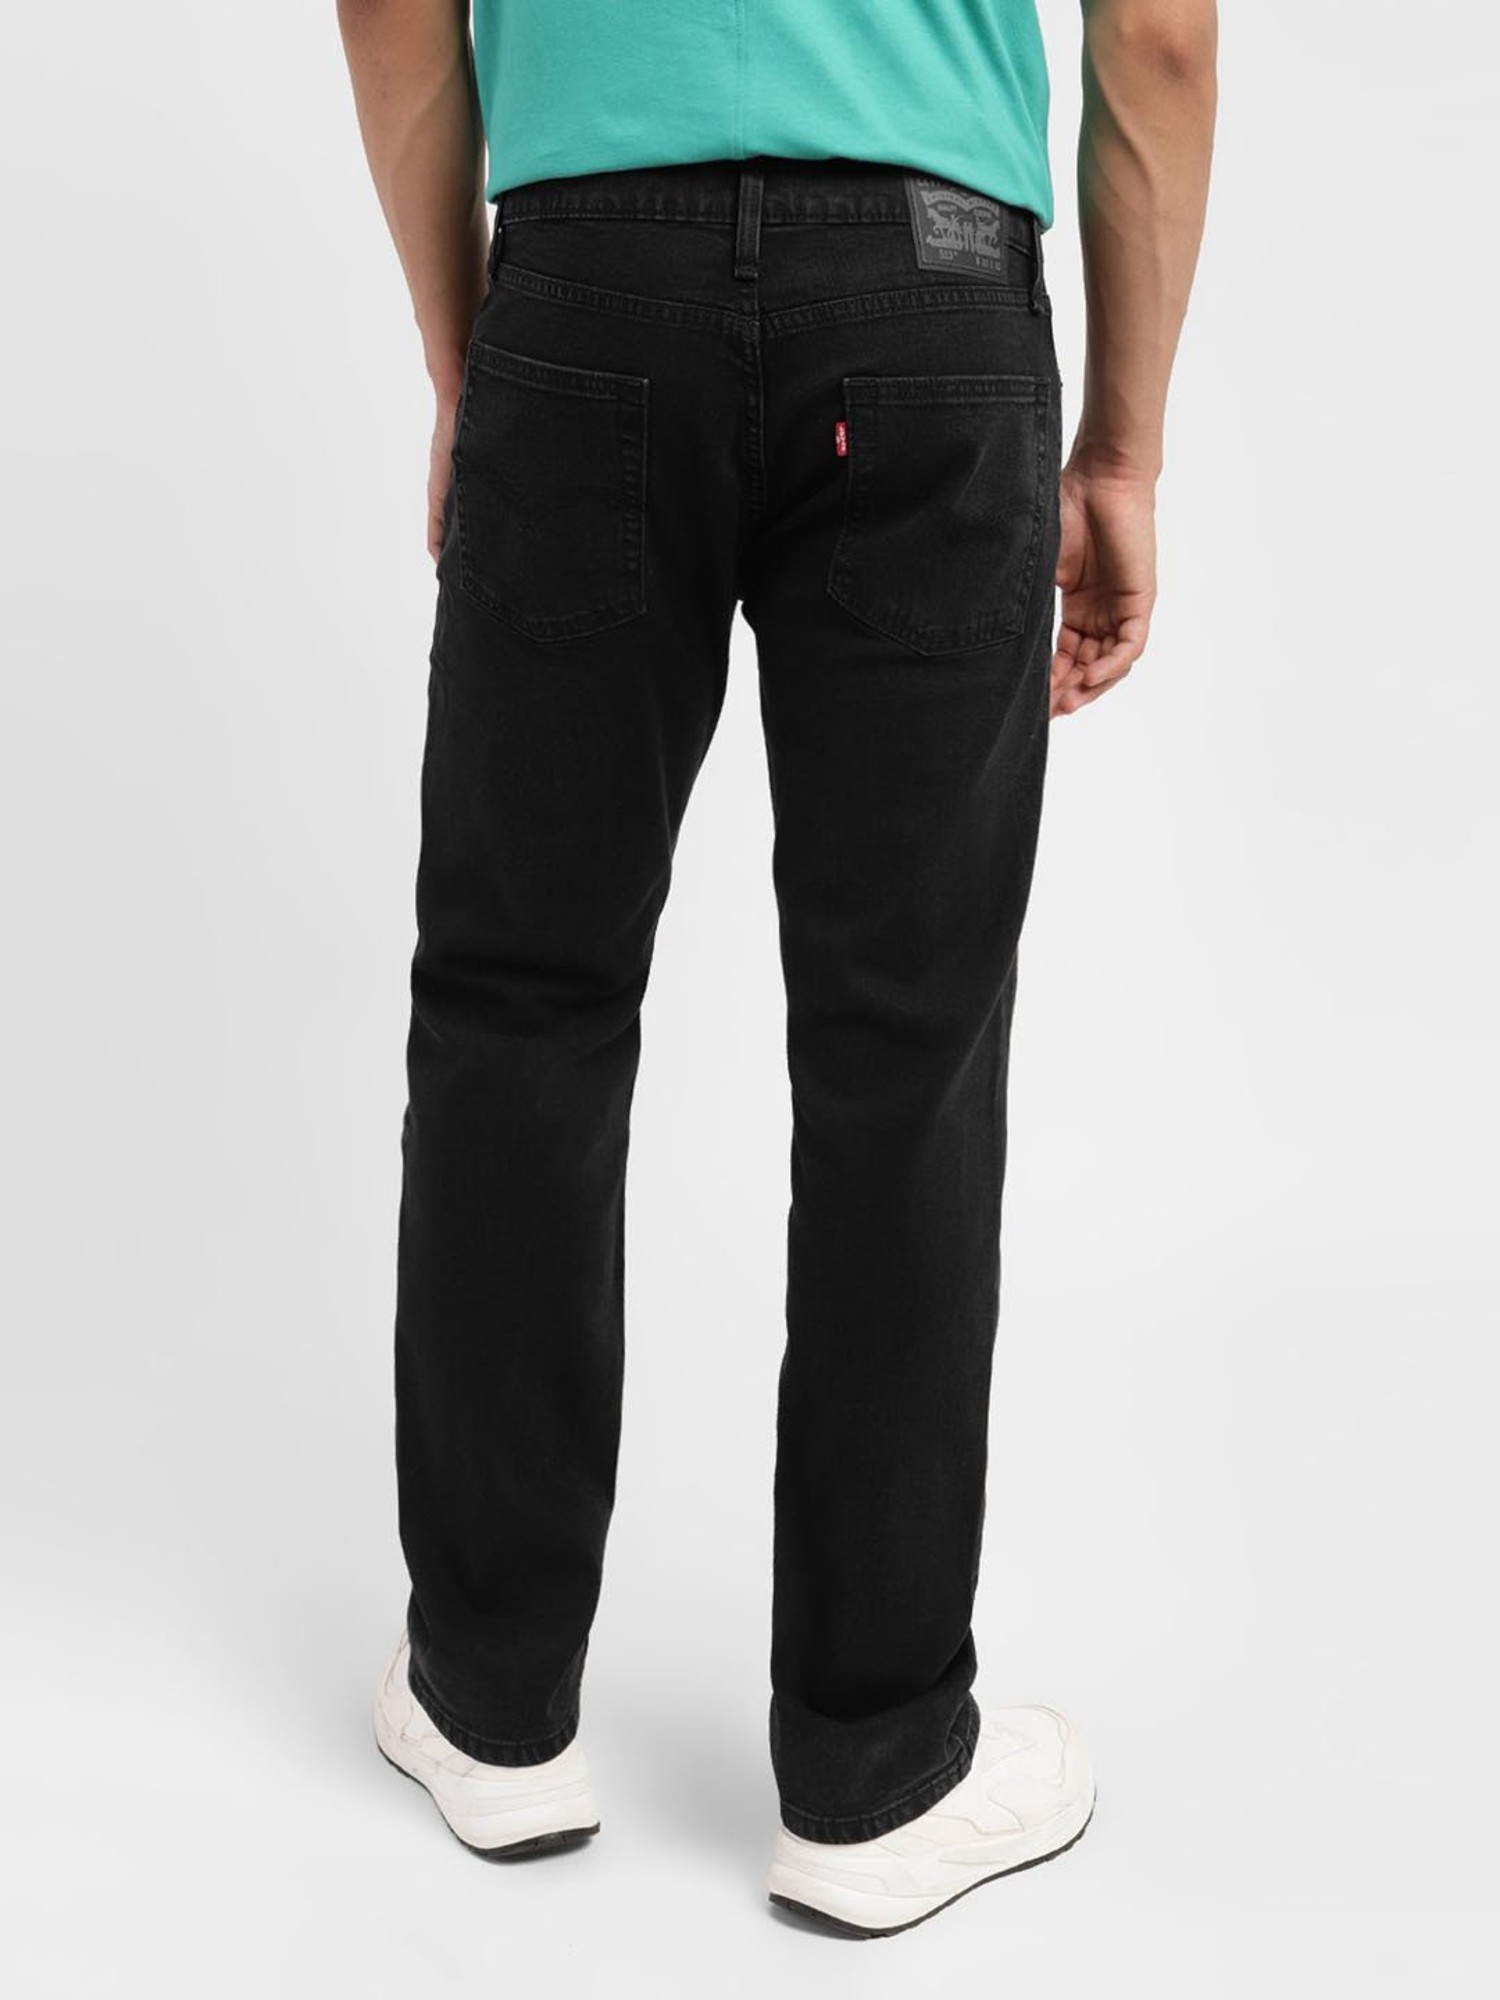 Levis Black Color Denim 65504 Skinny Stretch Fit Jeans